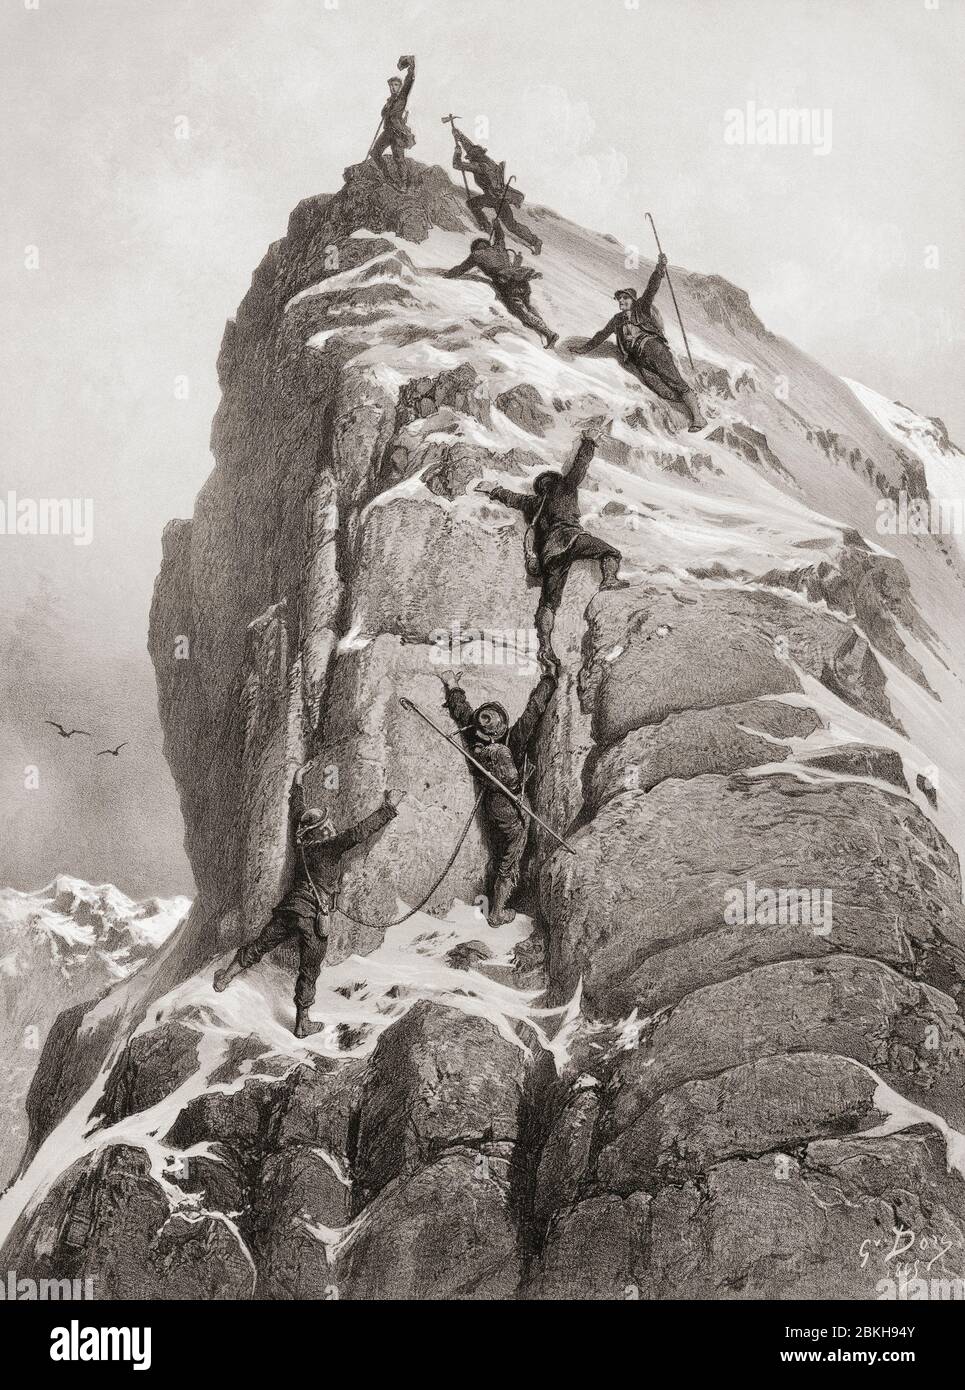 Die Erstbesteigung des Matterhorns durch Edward Whymper, Lord Francis Douglas, Charles Hudson, Douglas Hadow, Michel Croz mit zwei Zermatter Führern, Peter Taugwalder und seinem gleichnamigen Sohn, erfolgte am 14. Juli 1865. Nach einem Stich von Gustave Dore. Stockfoto